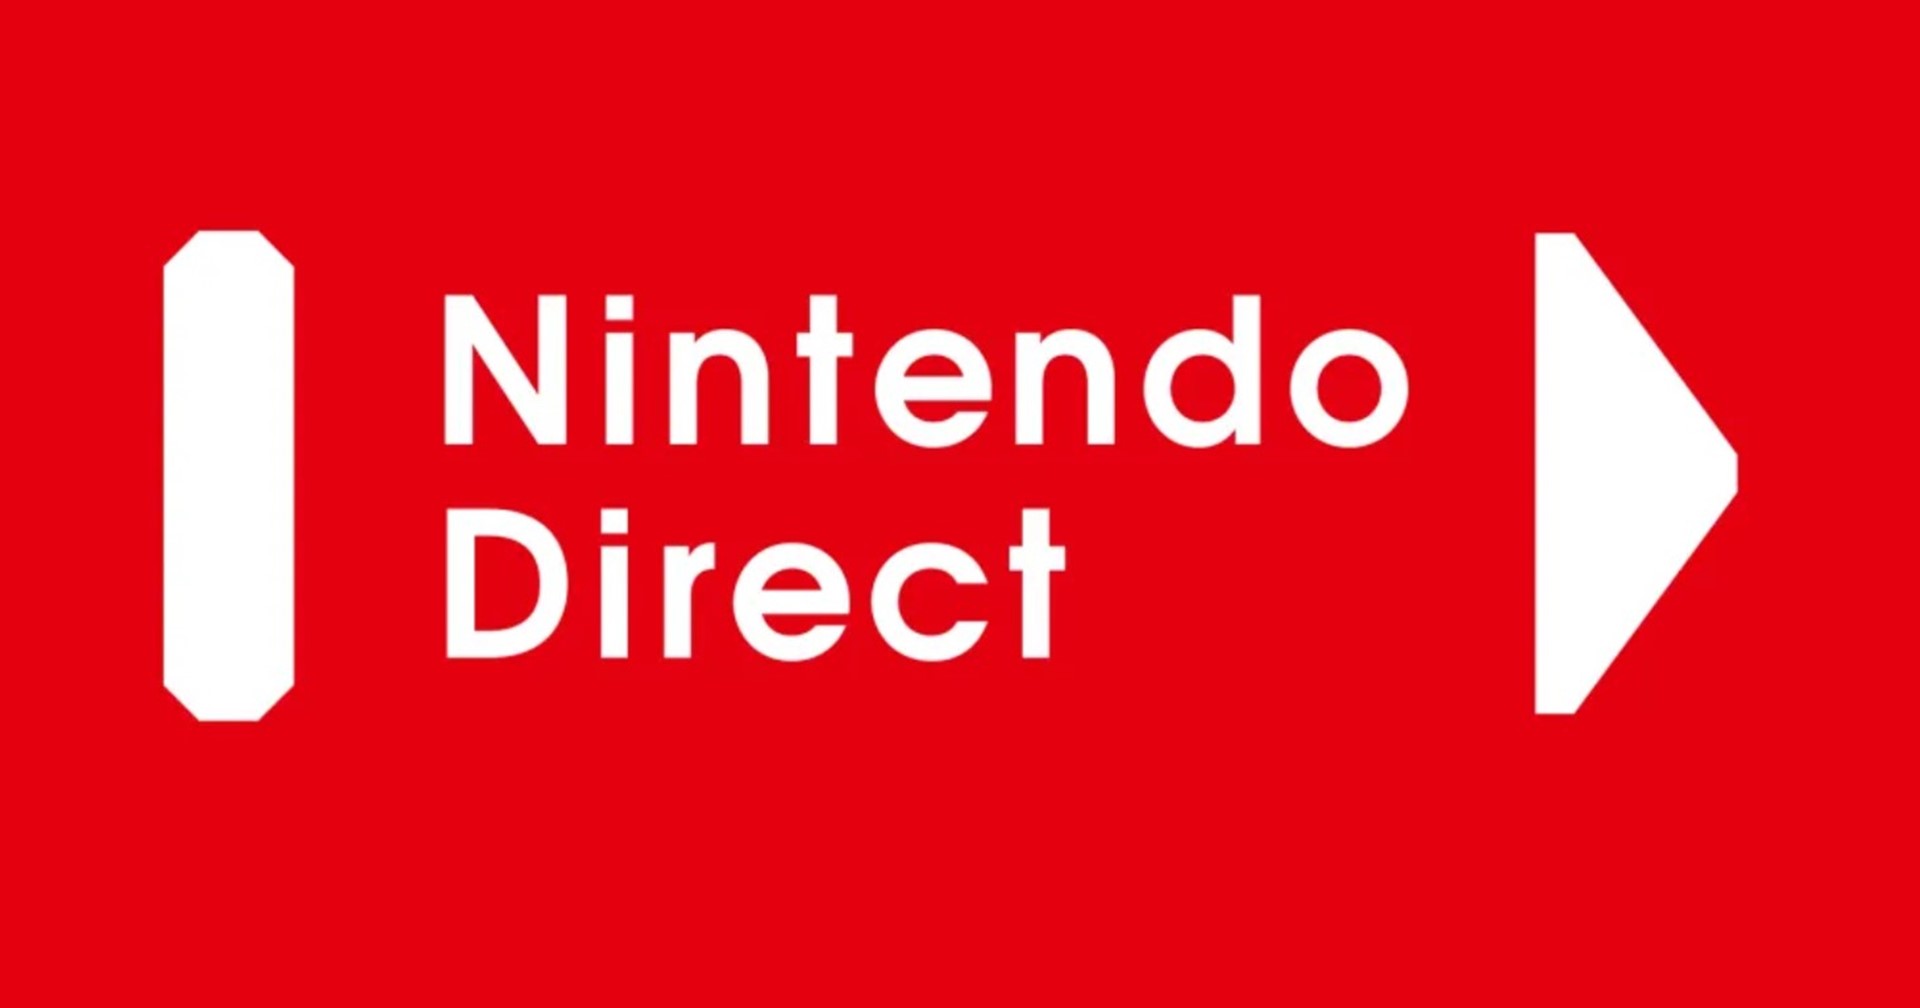 [ข่าวลือ] ปู่นินเตรียมจัดงาน Nintendo Direct ต้นเดือน กรกฎาคม